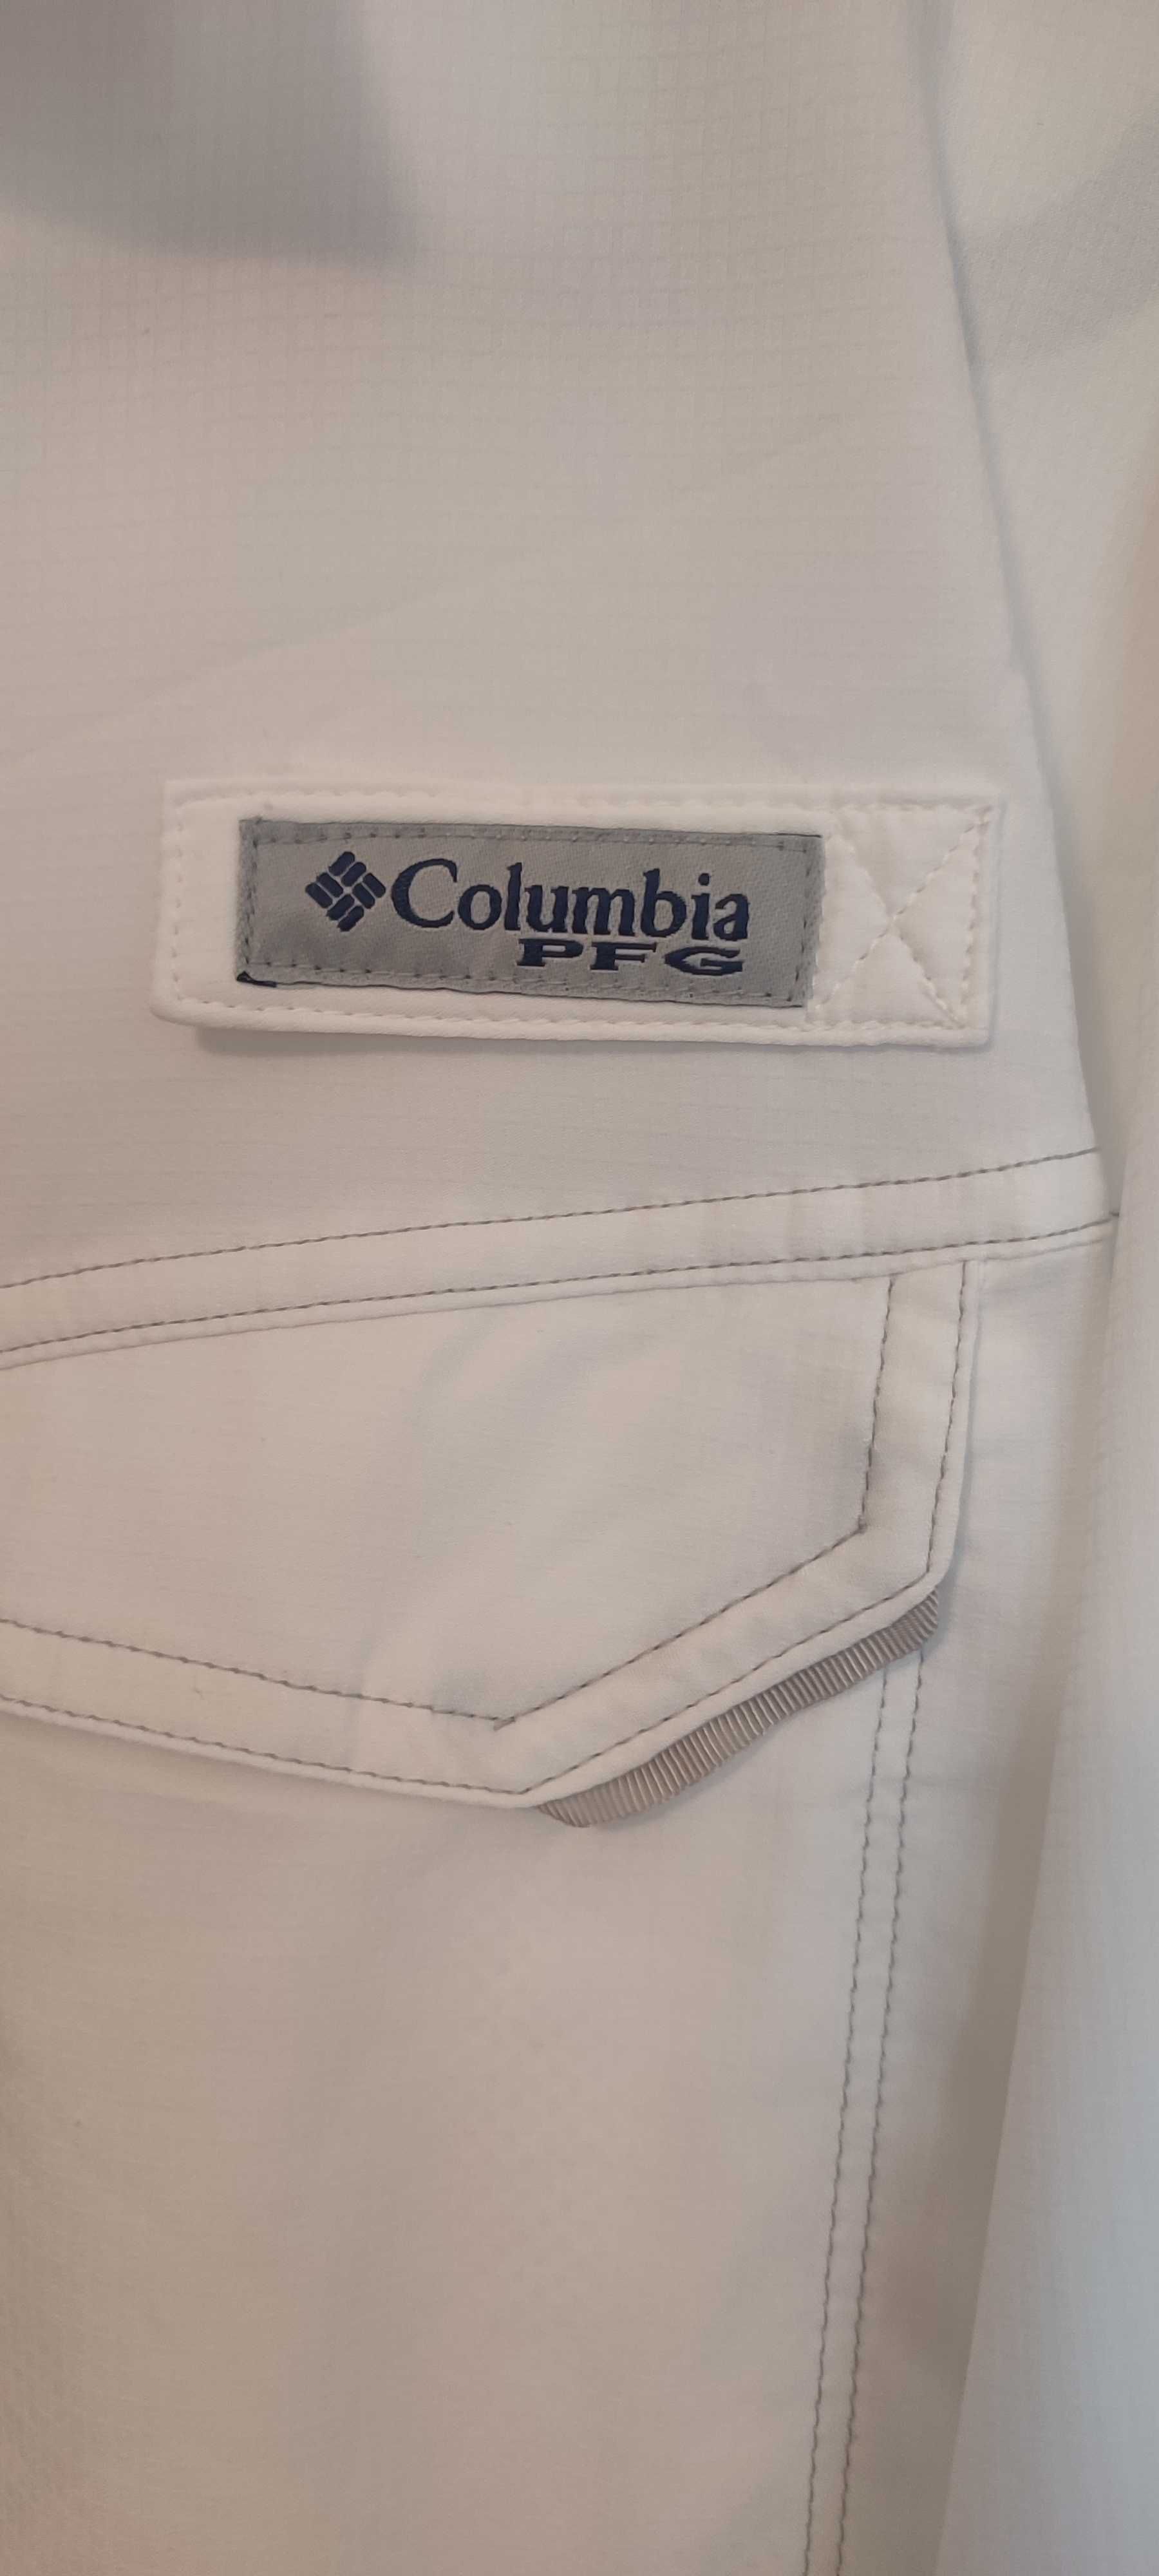 Camisa manga curta verão XL Columbia